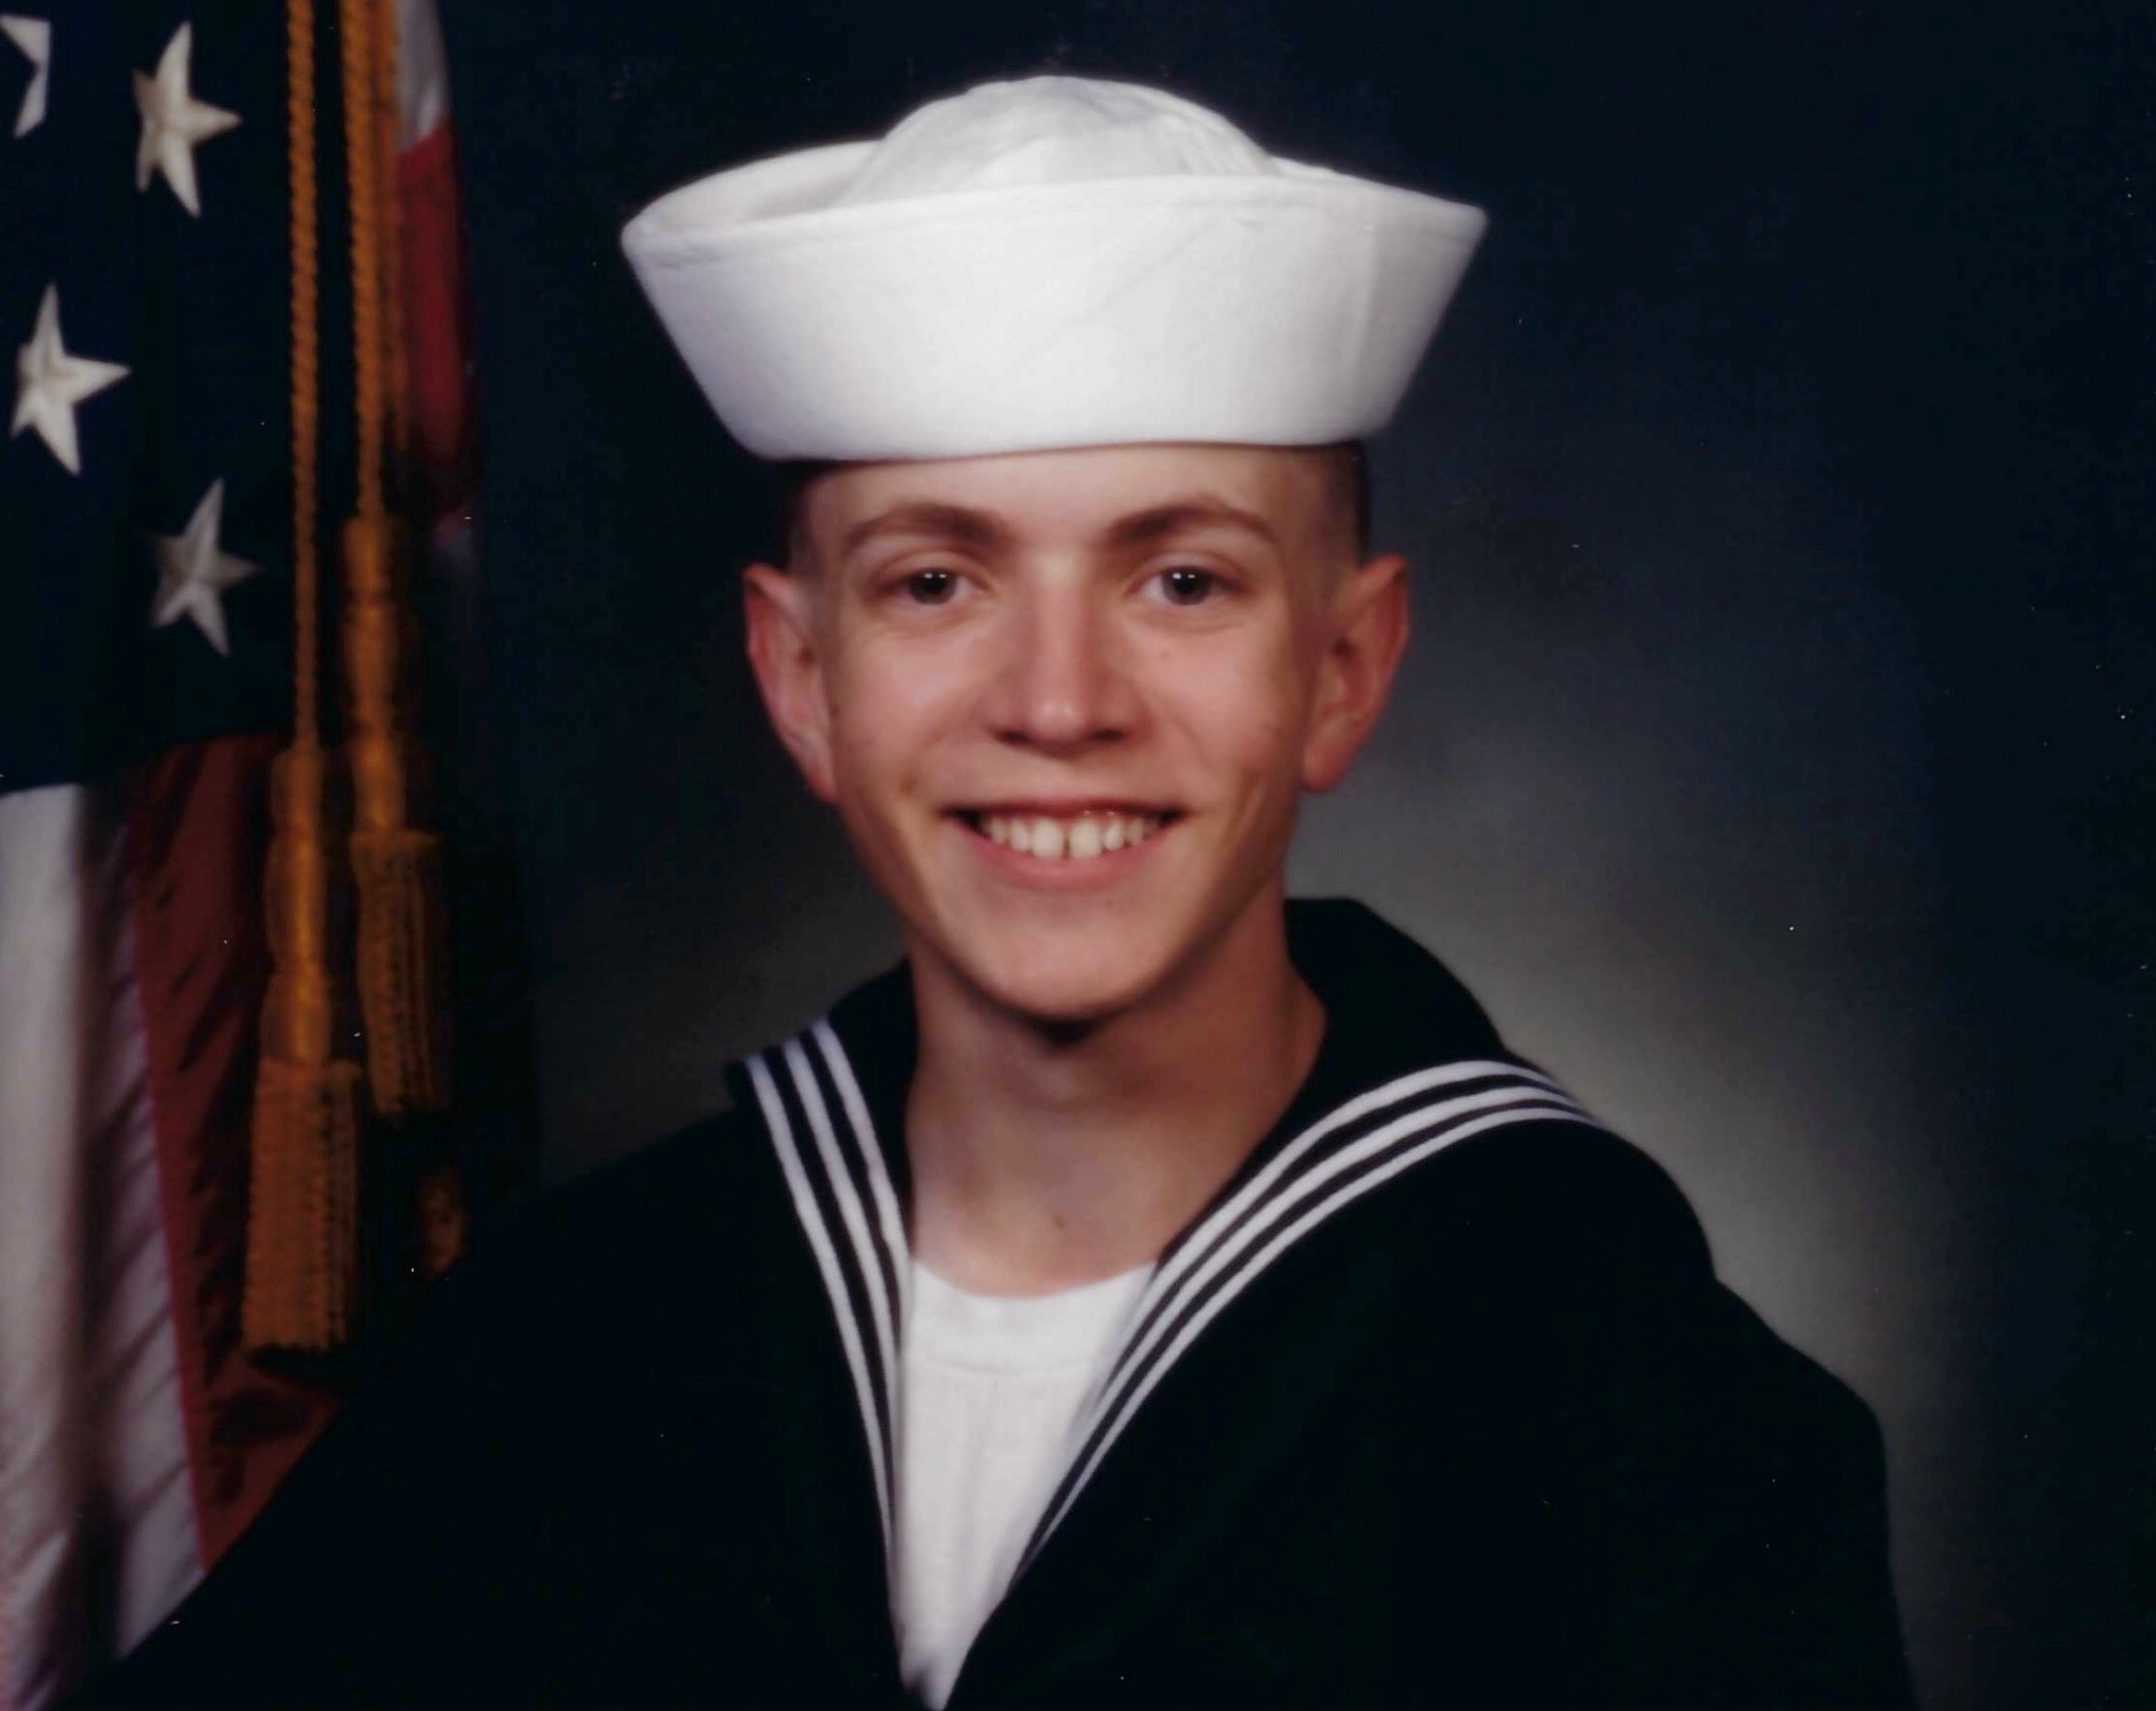 U.S. Navy veteran headshot